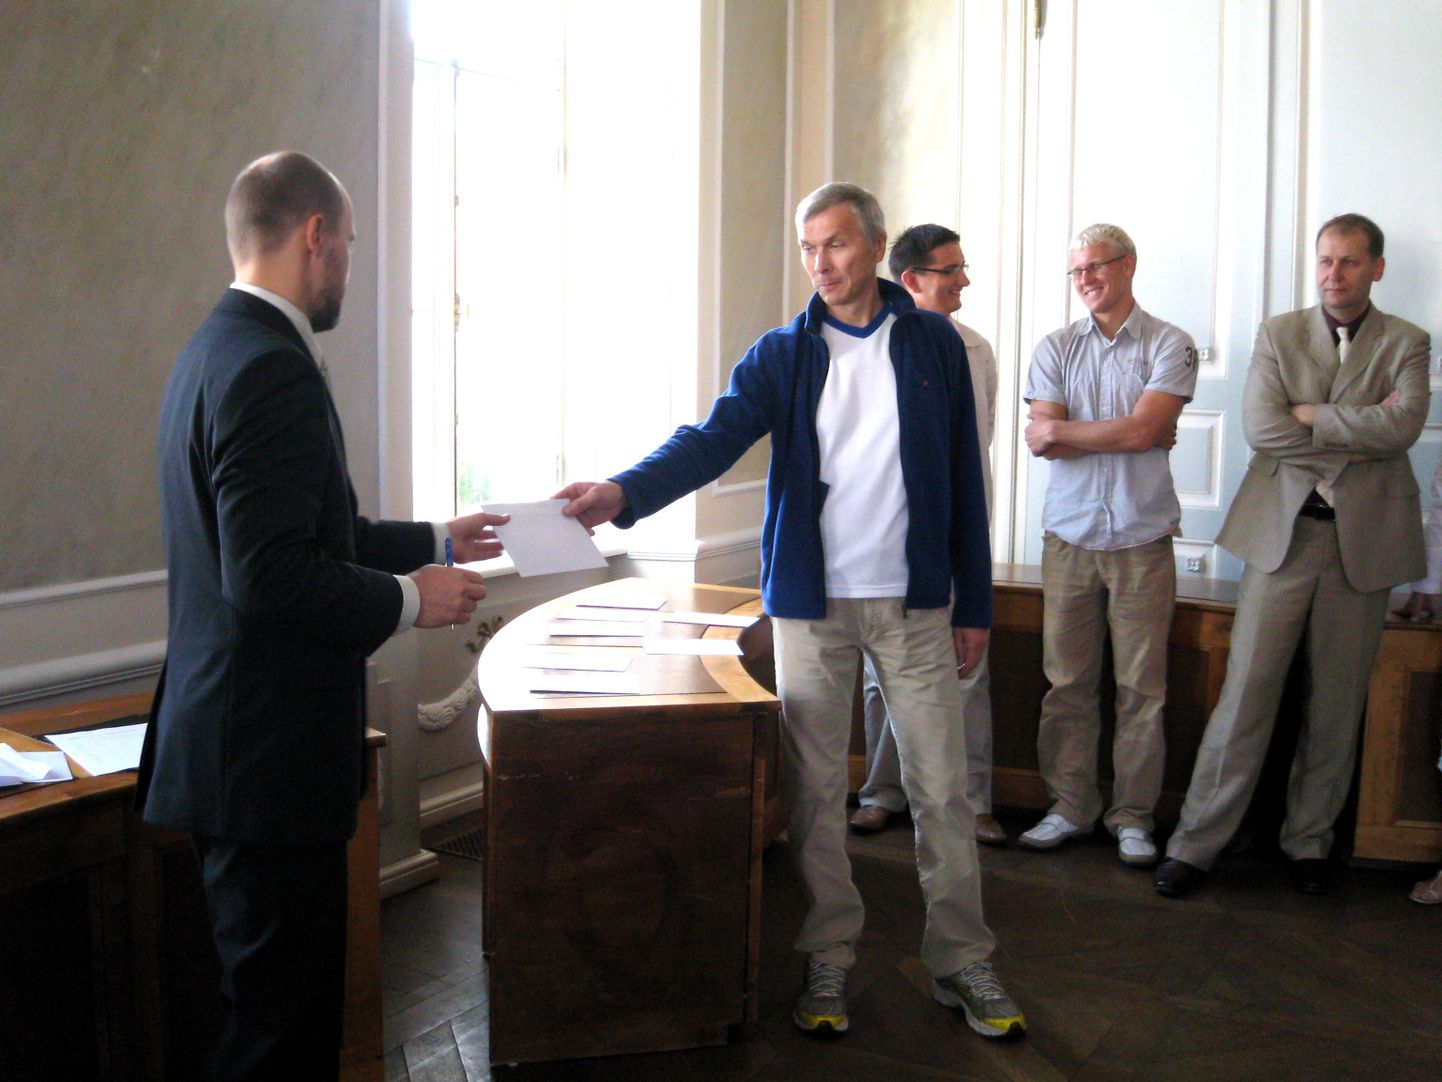 Esimese loosiümbriku, mille Tartu valimiskomisjoni liige Jaan Ainelo linnasekretärile Jüri Mölderile ulatas, sisaldas valimisliidu Initsiativa nime.